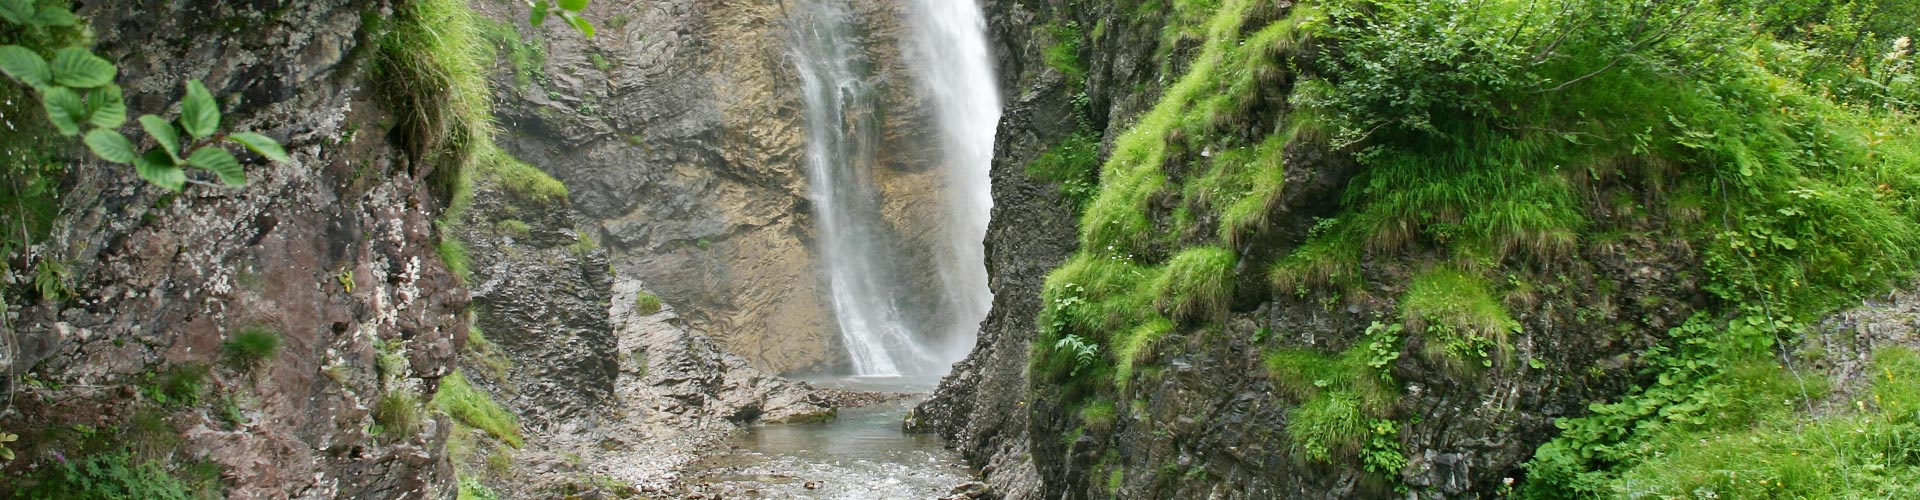 Der Stuibenfall ist einer der schönsten Wasserfälle des Allgäus